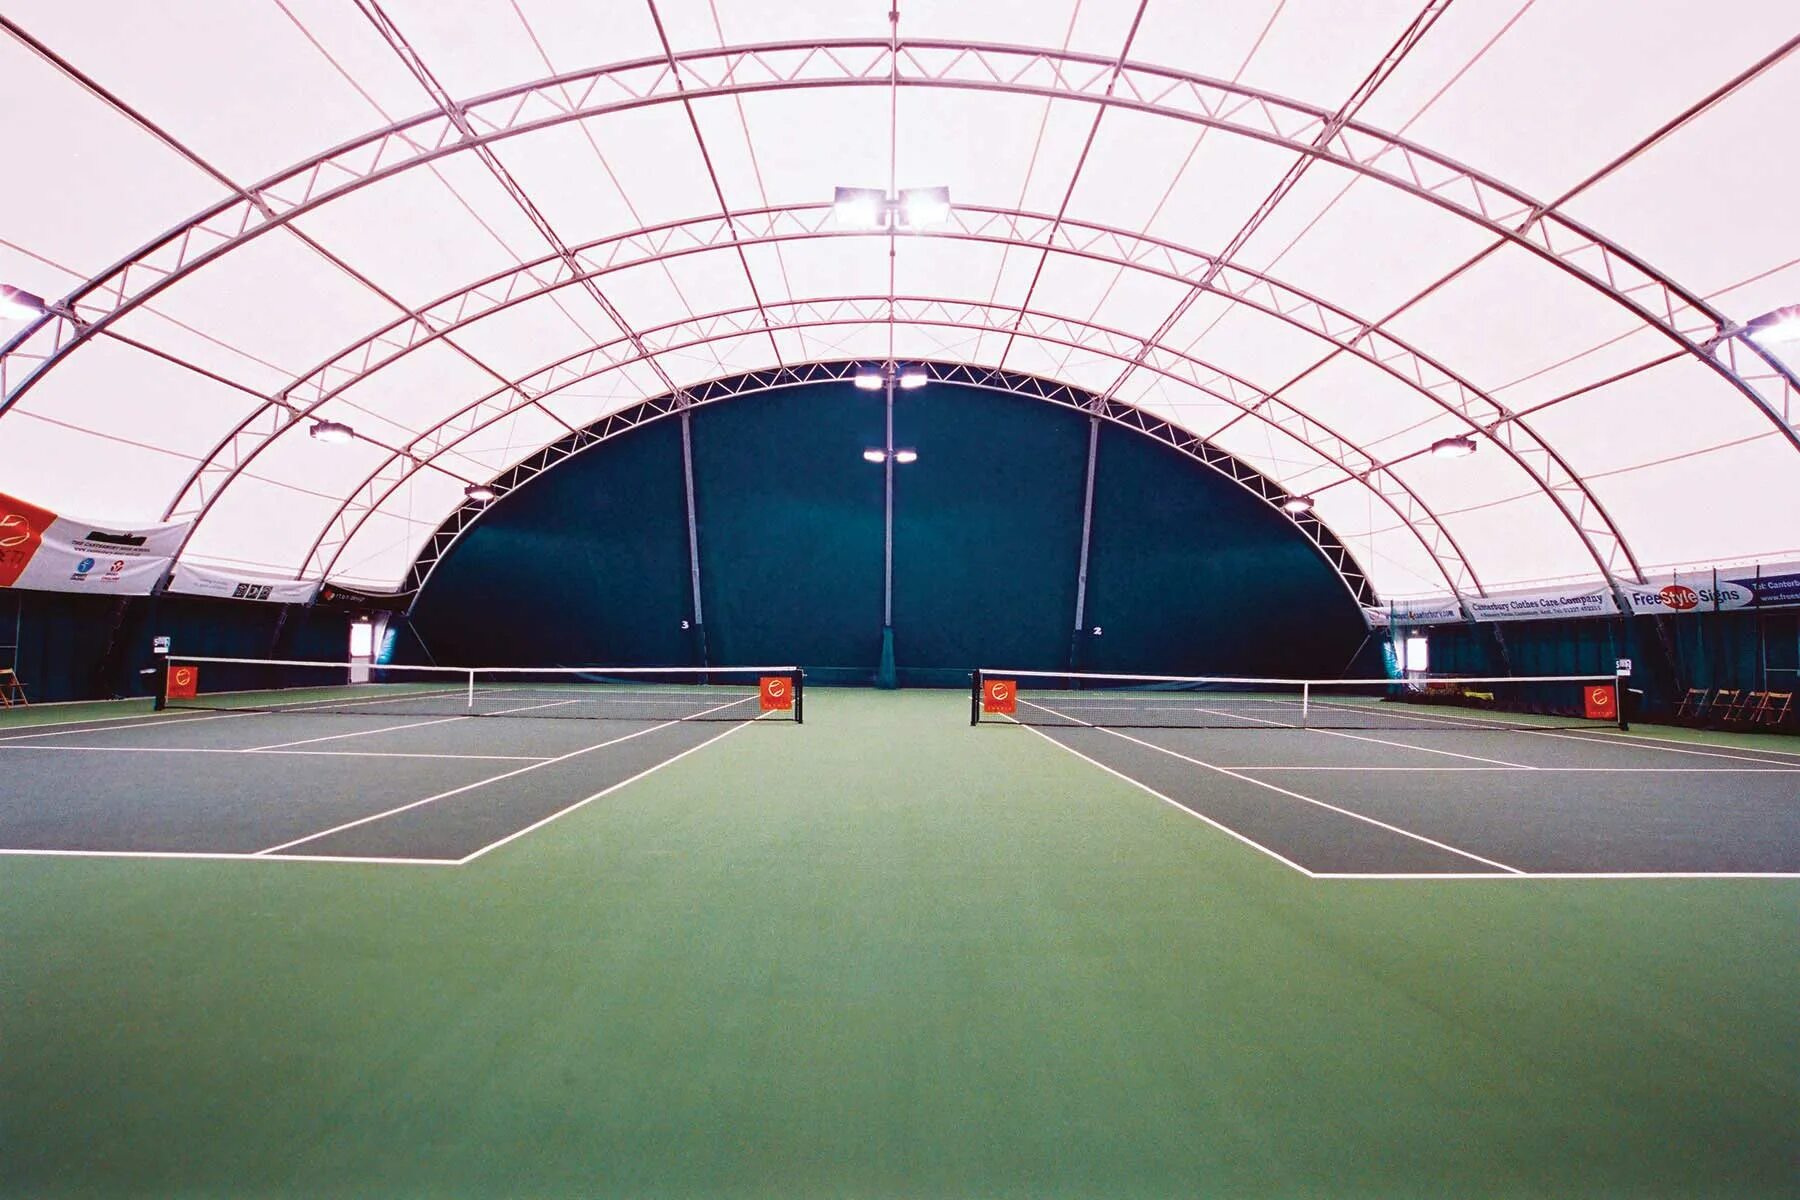 Сад имени Баумана теннисный корт. Стадион Ангара легкоатлетический манеж. Теннисный корт 40 на 20. Теннисный корт Гамильтон. Открыть теннисный корт